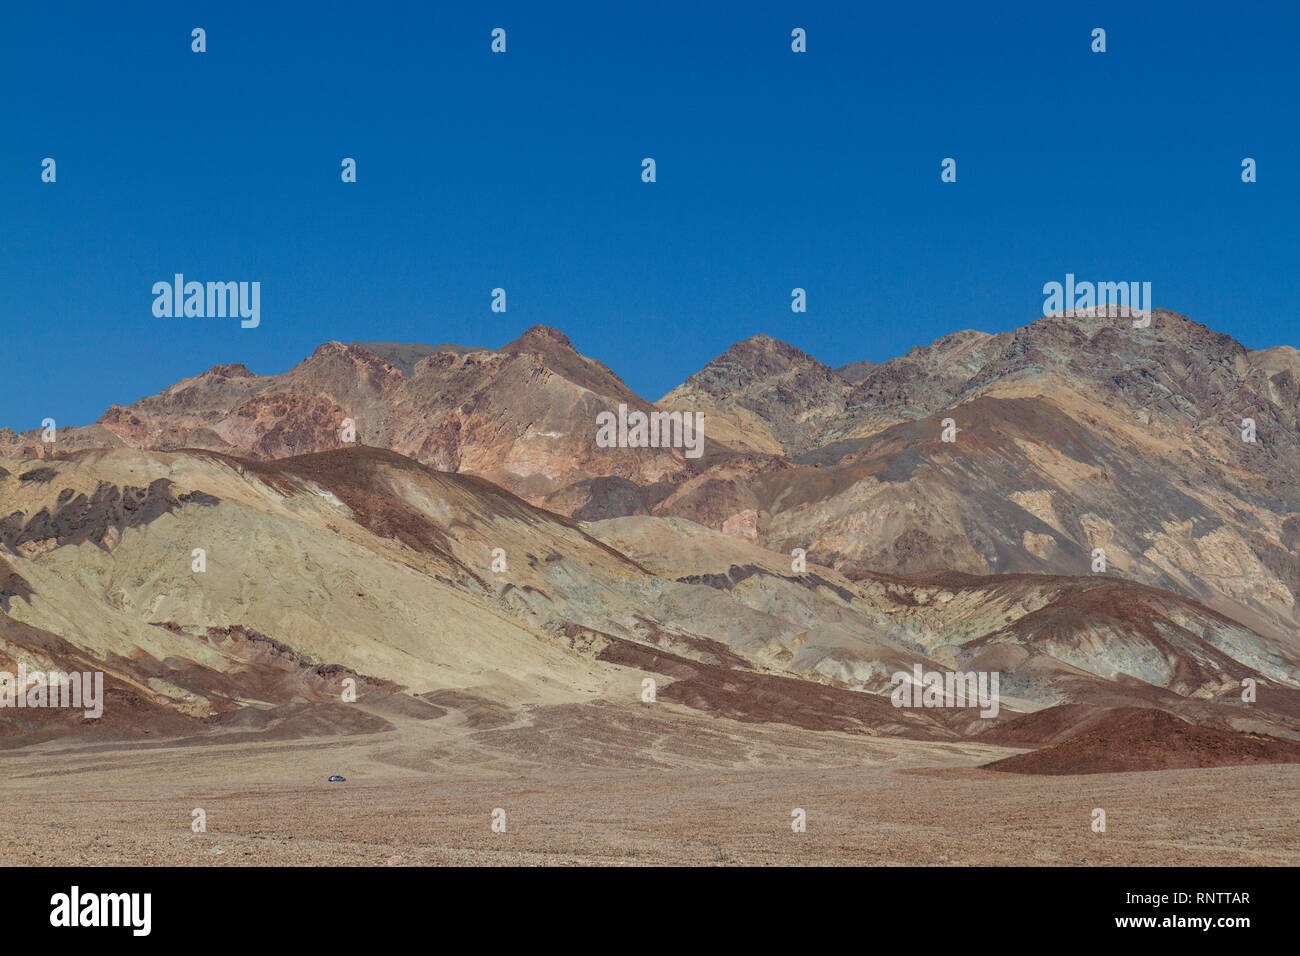 Une voiture (en bas à gauche du cadre) à l'approche de la palette de l'artiste domaine de la vallée de la mort, Death Valley National Park, California, United States. Banque D'Images